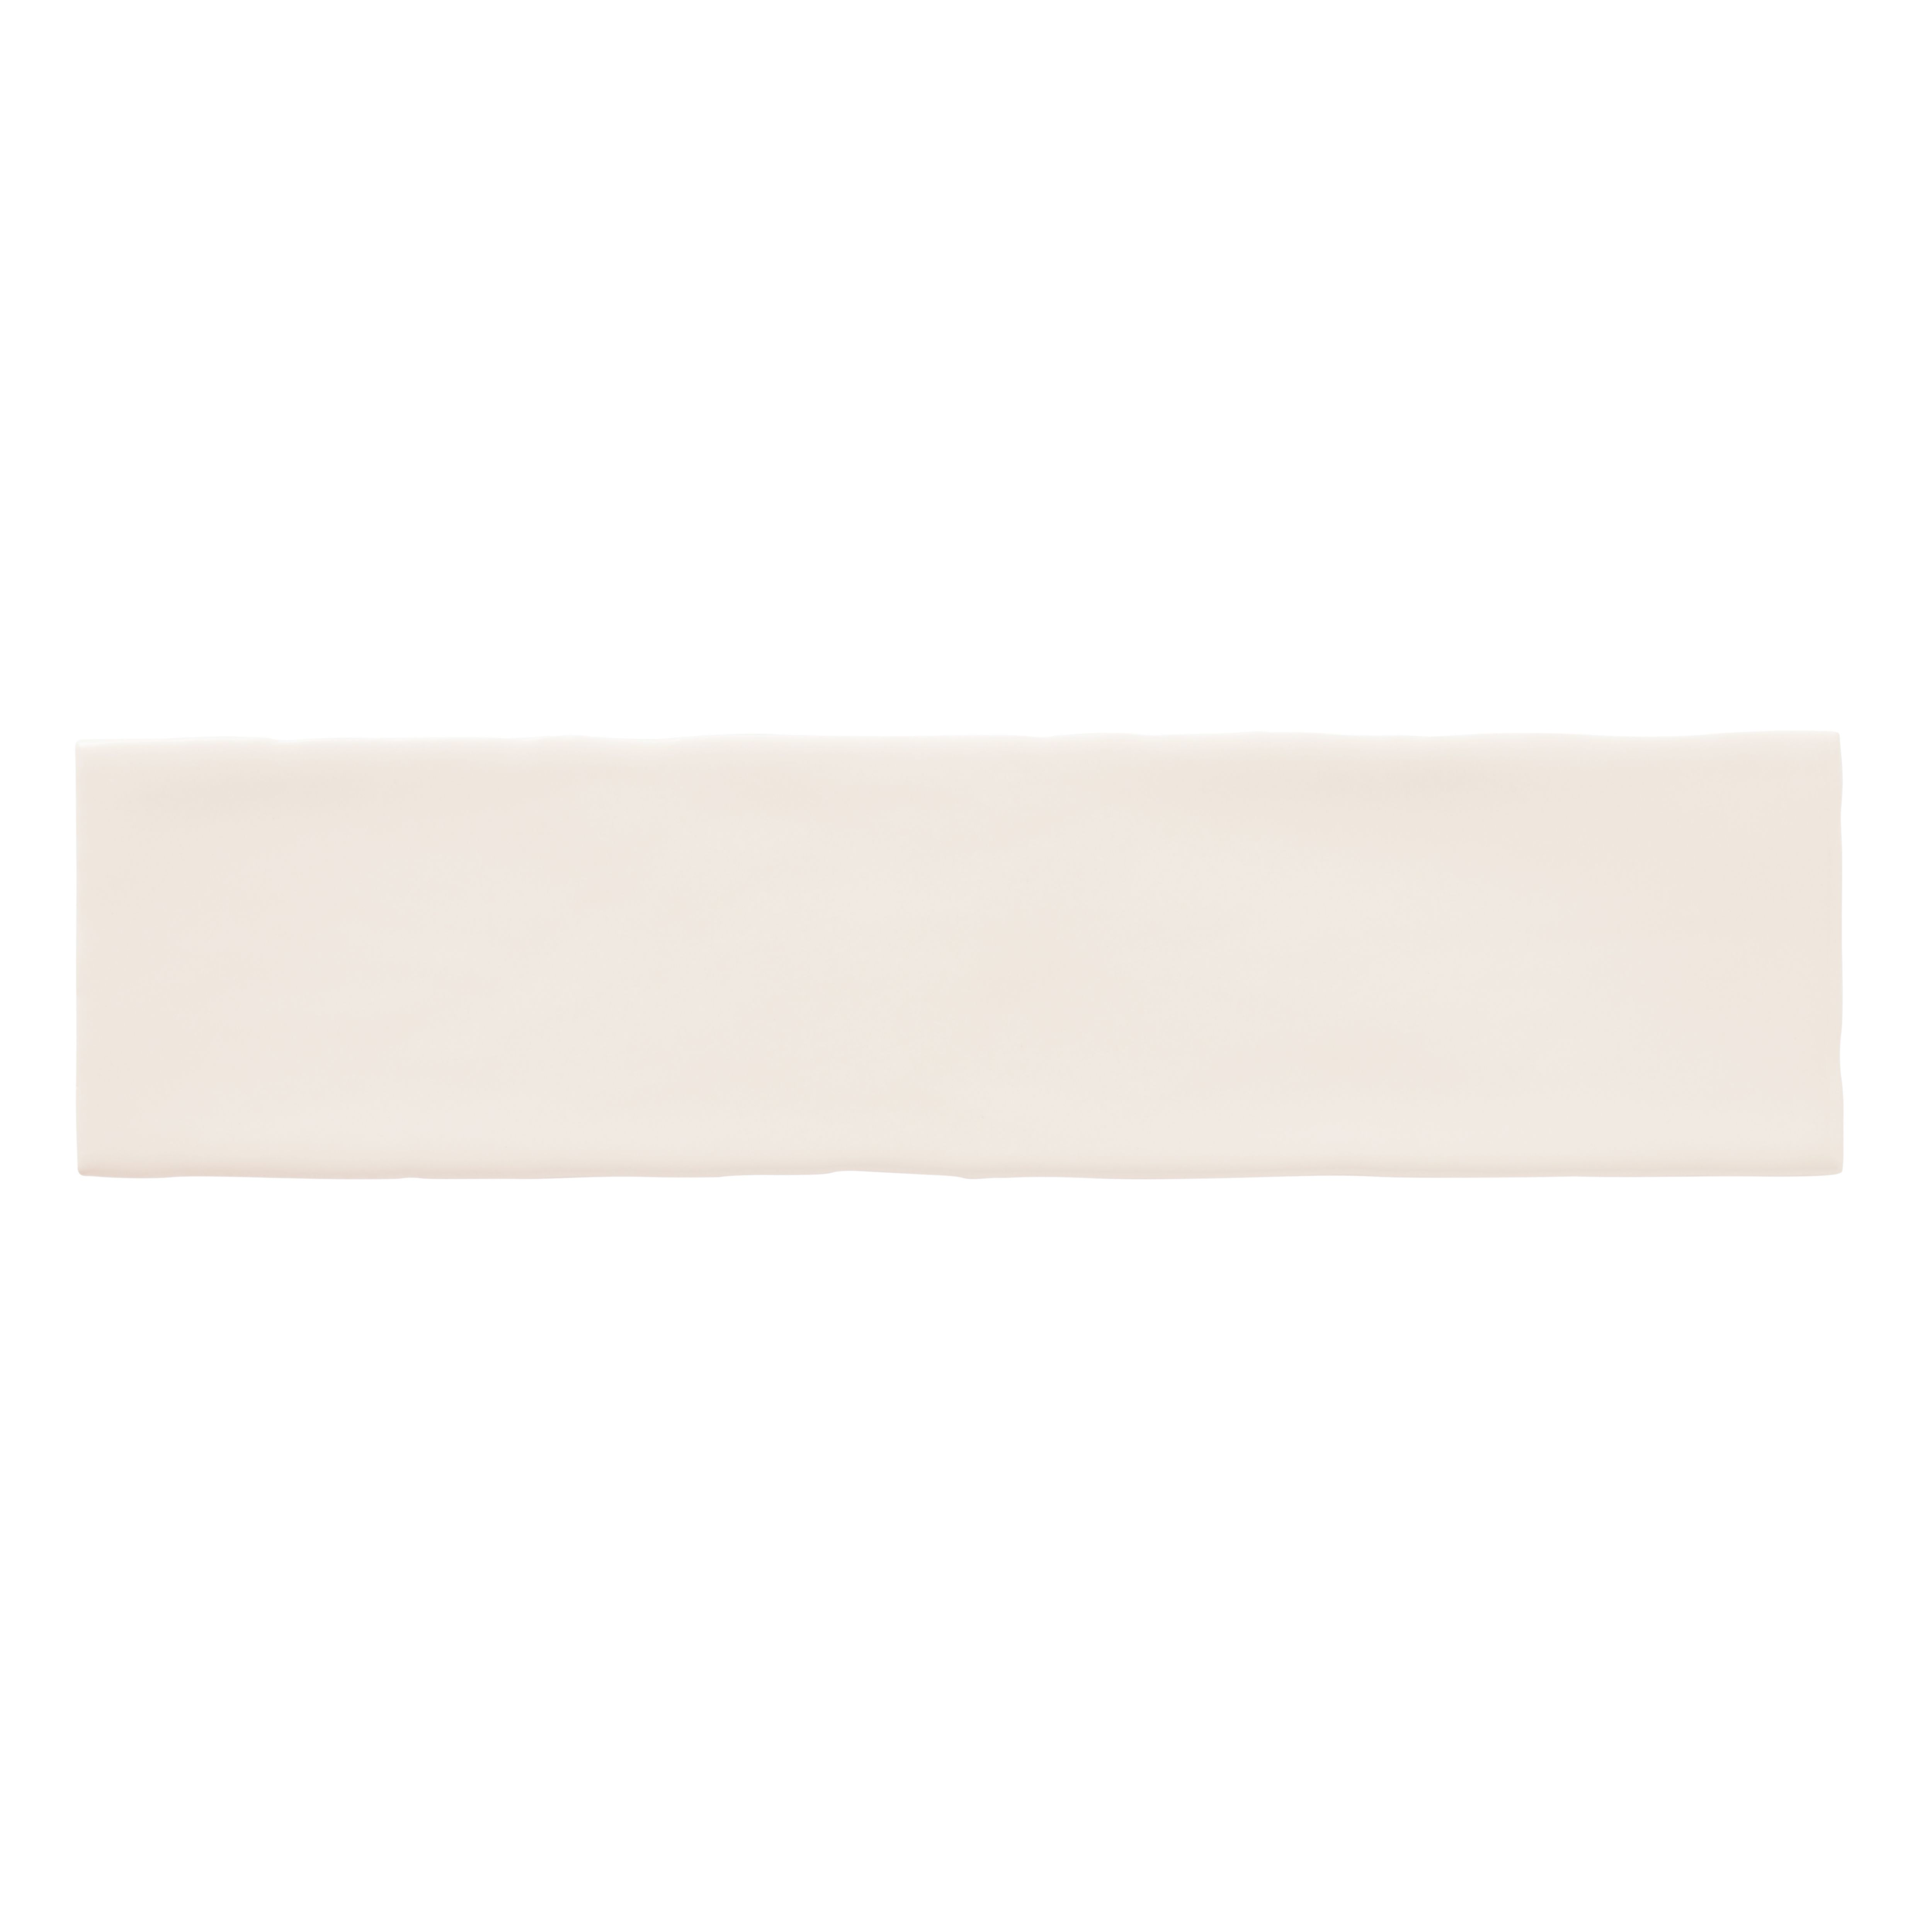 Vernisse Off white Gloss Plain Ceramic Wall Tile, Pack of 41, (L)301mm (W)75.4mm